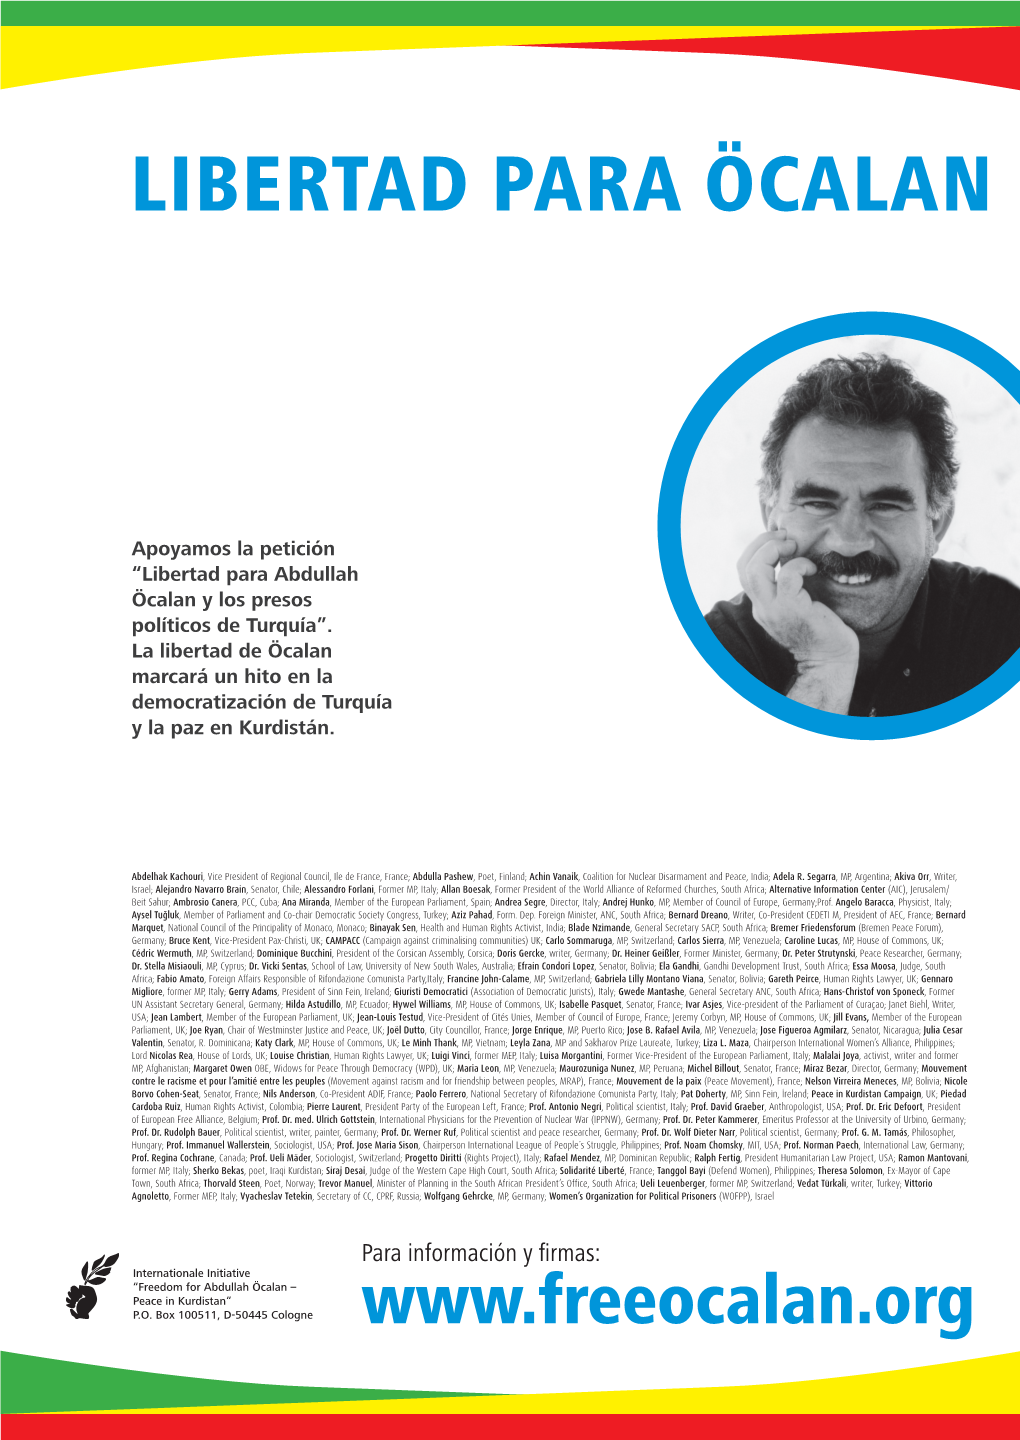 Para Información Y Firmas: Internationale Initiative “Freedom for Abdullah Öcalan – Peace in Kurdistan“ P.O